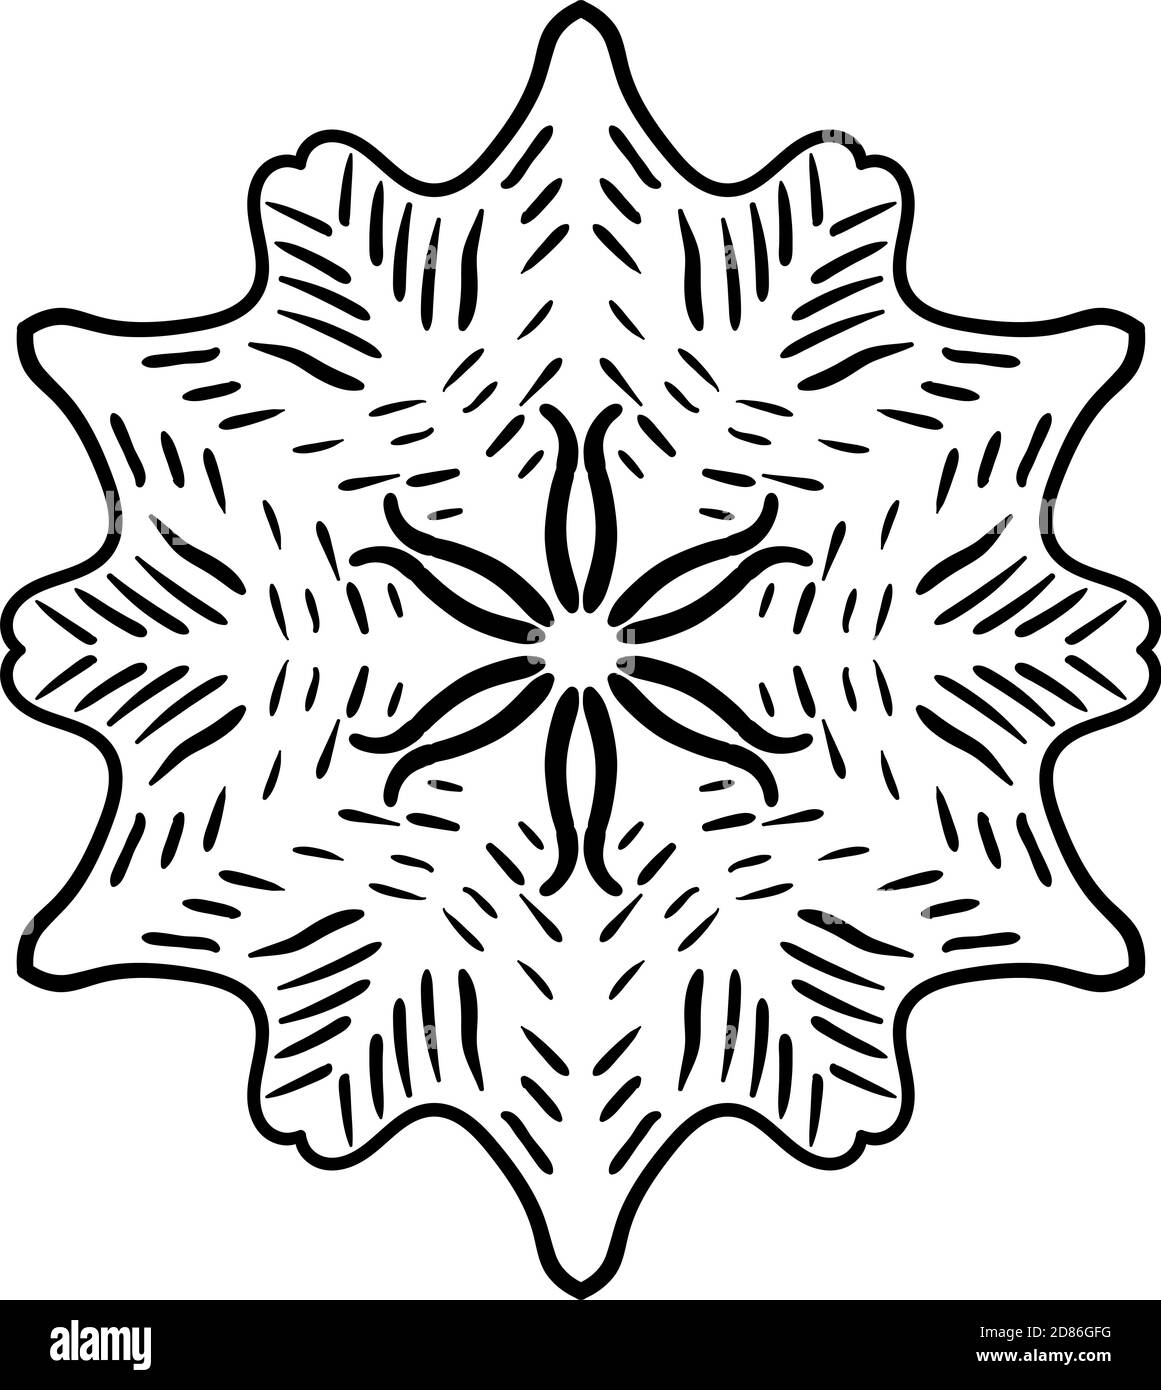 Motif circulaire sous forme de mandala pour les cartes de vœux, l'impression de cas, etc. Motifs abstraits. Motif Mandala noir et blanc Banque D'Images